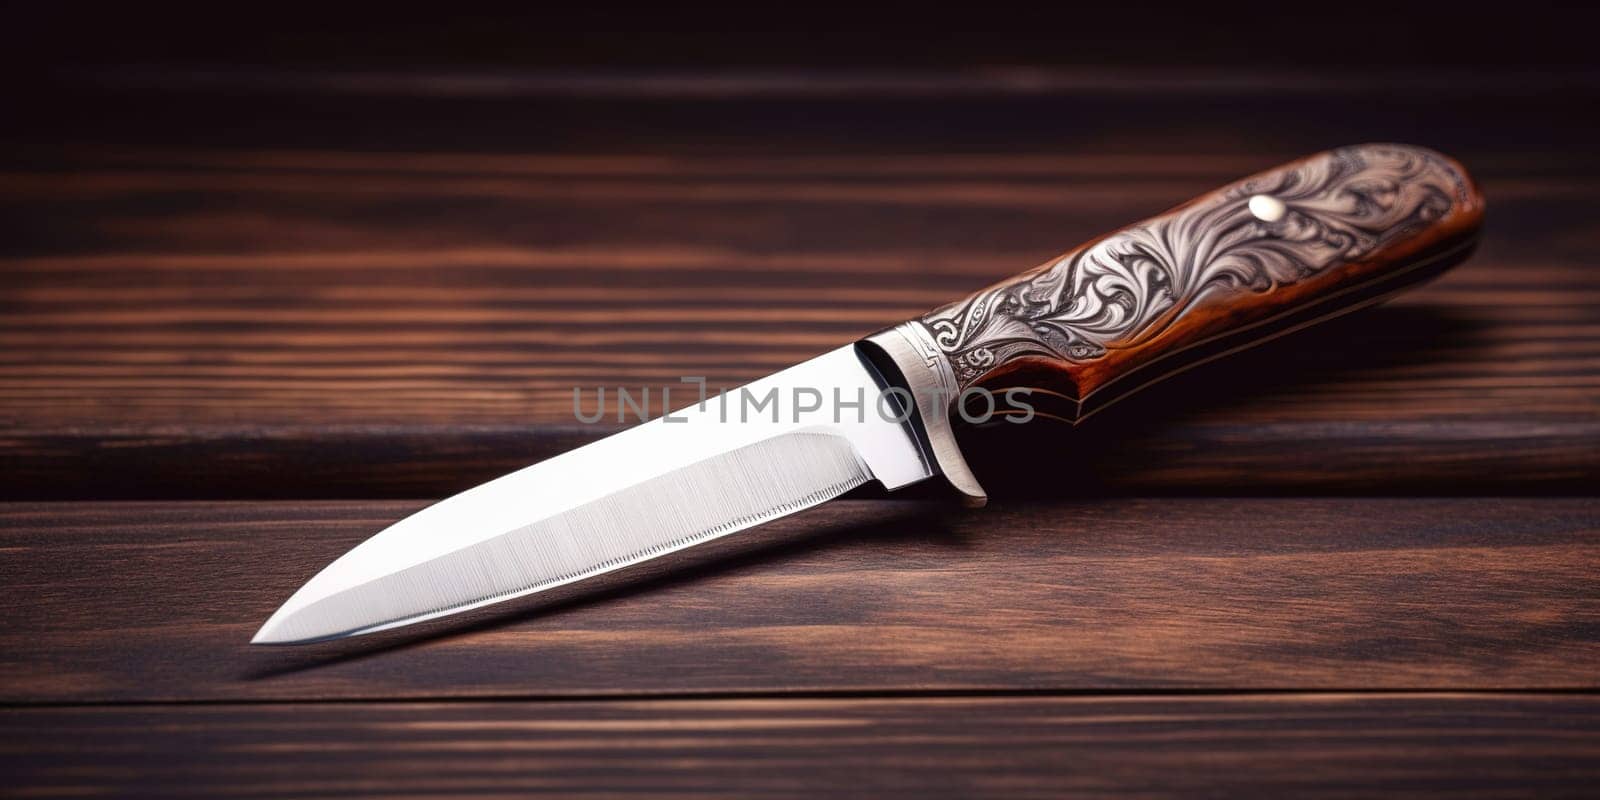 Kitchen Knife of damascus steel by GekaSkr